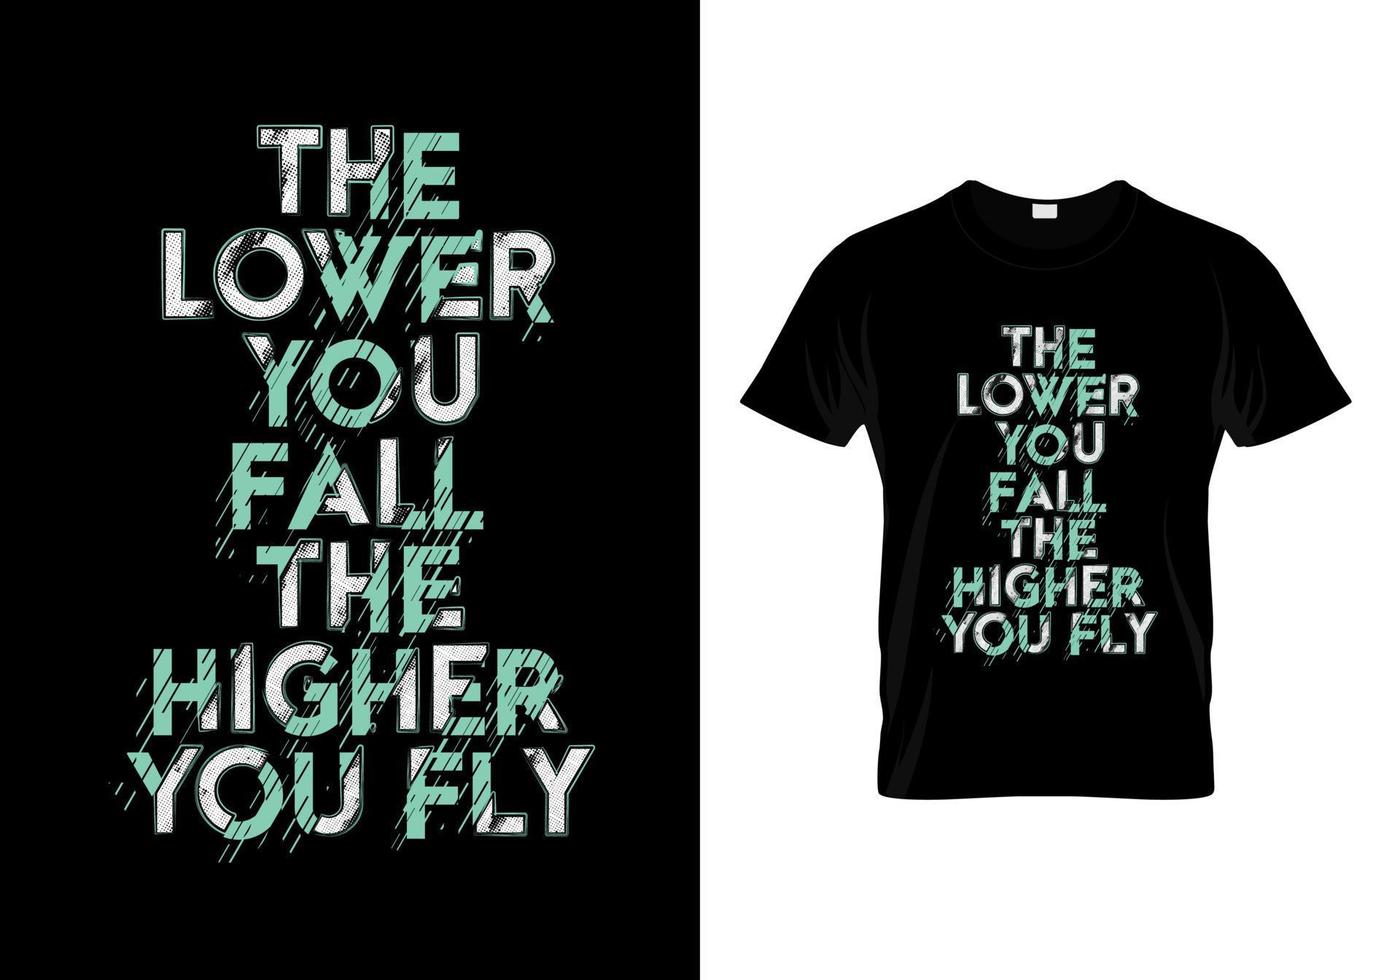 Je tiefer Sie fallen, desto höher fliegen Sie Typografie zitiert T-Shirt-Design vektor